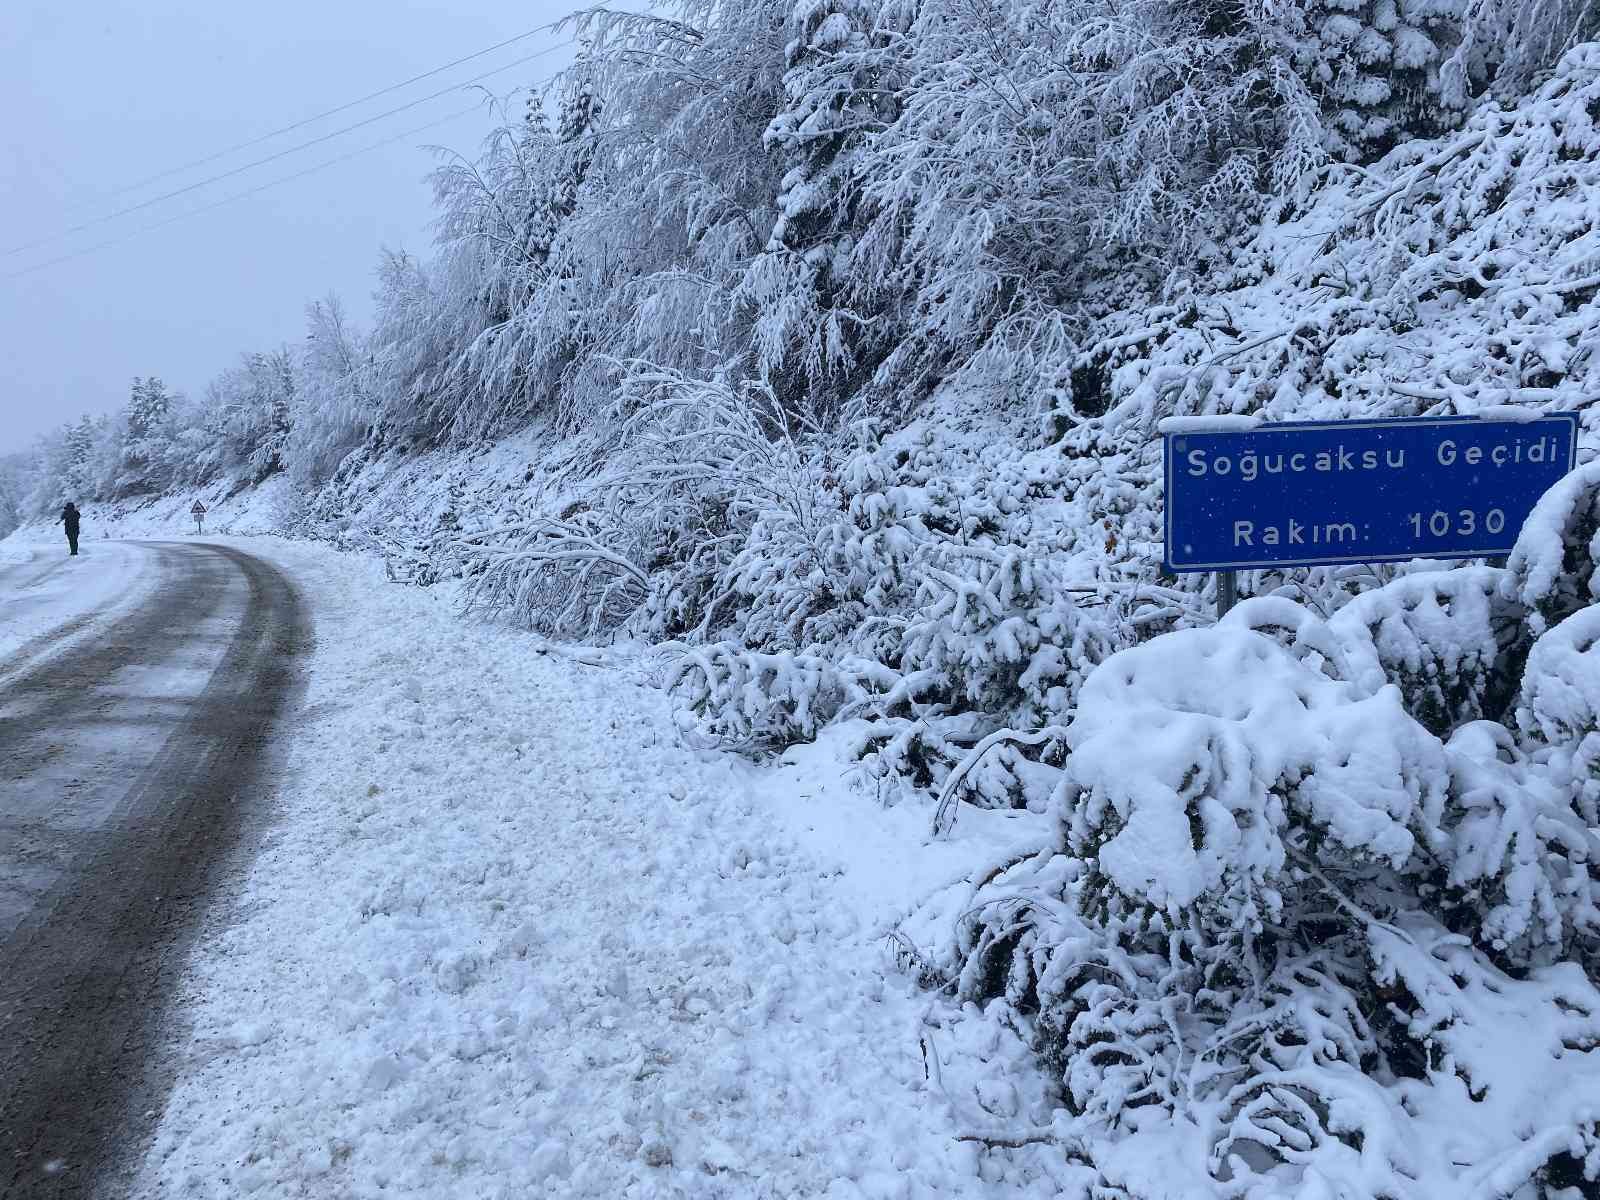 Bartın’da yüksek kesimlerde kar yağışı etkili oldu #bartin